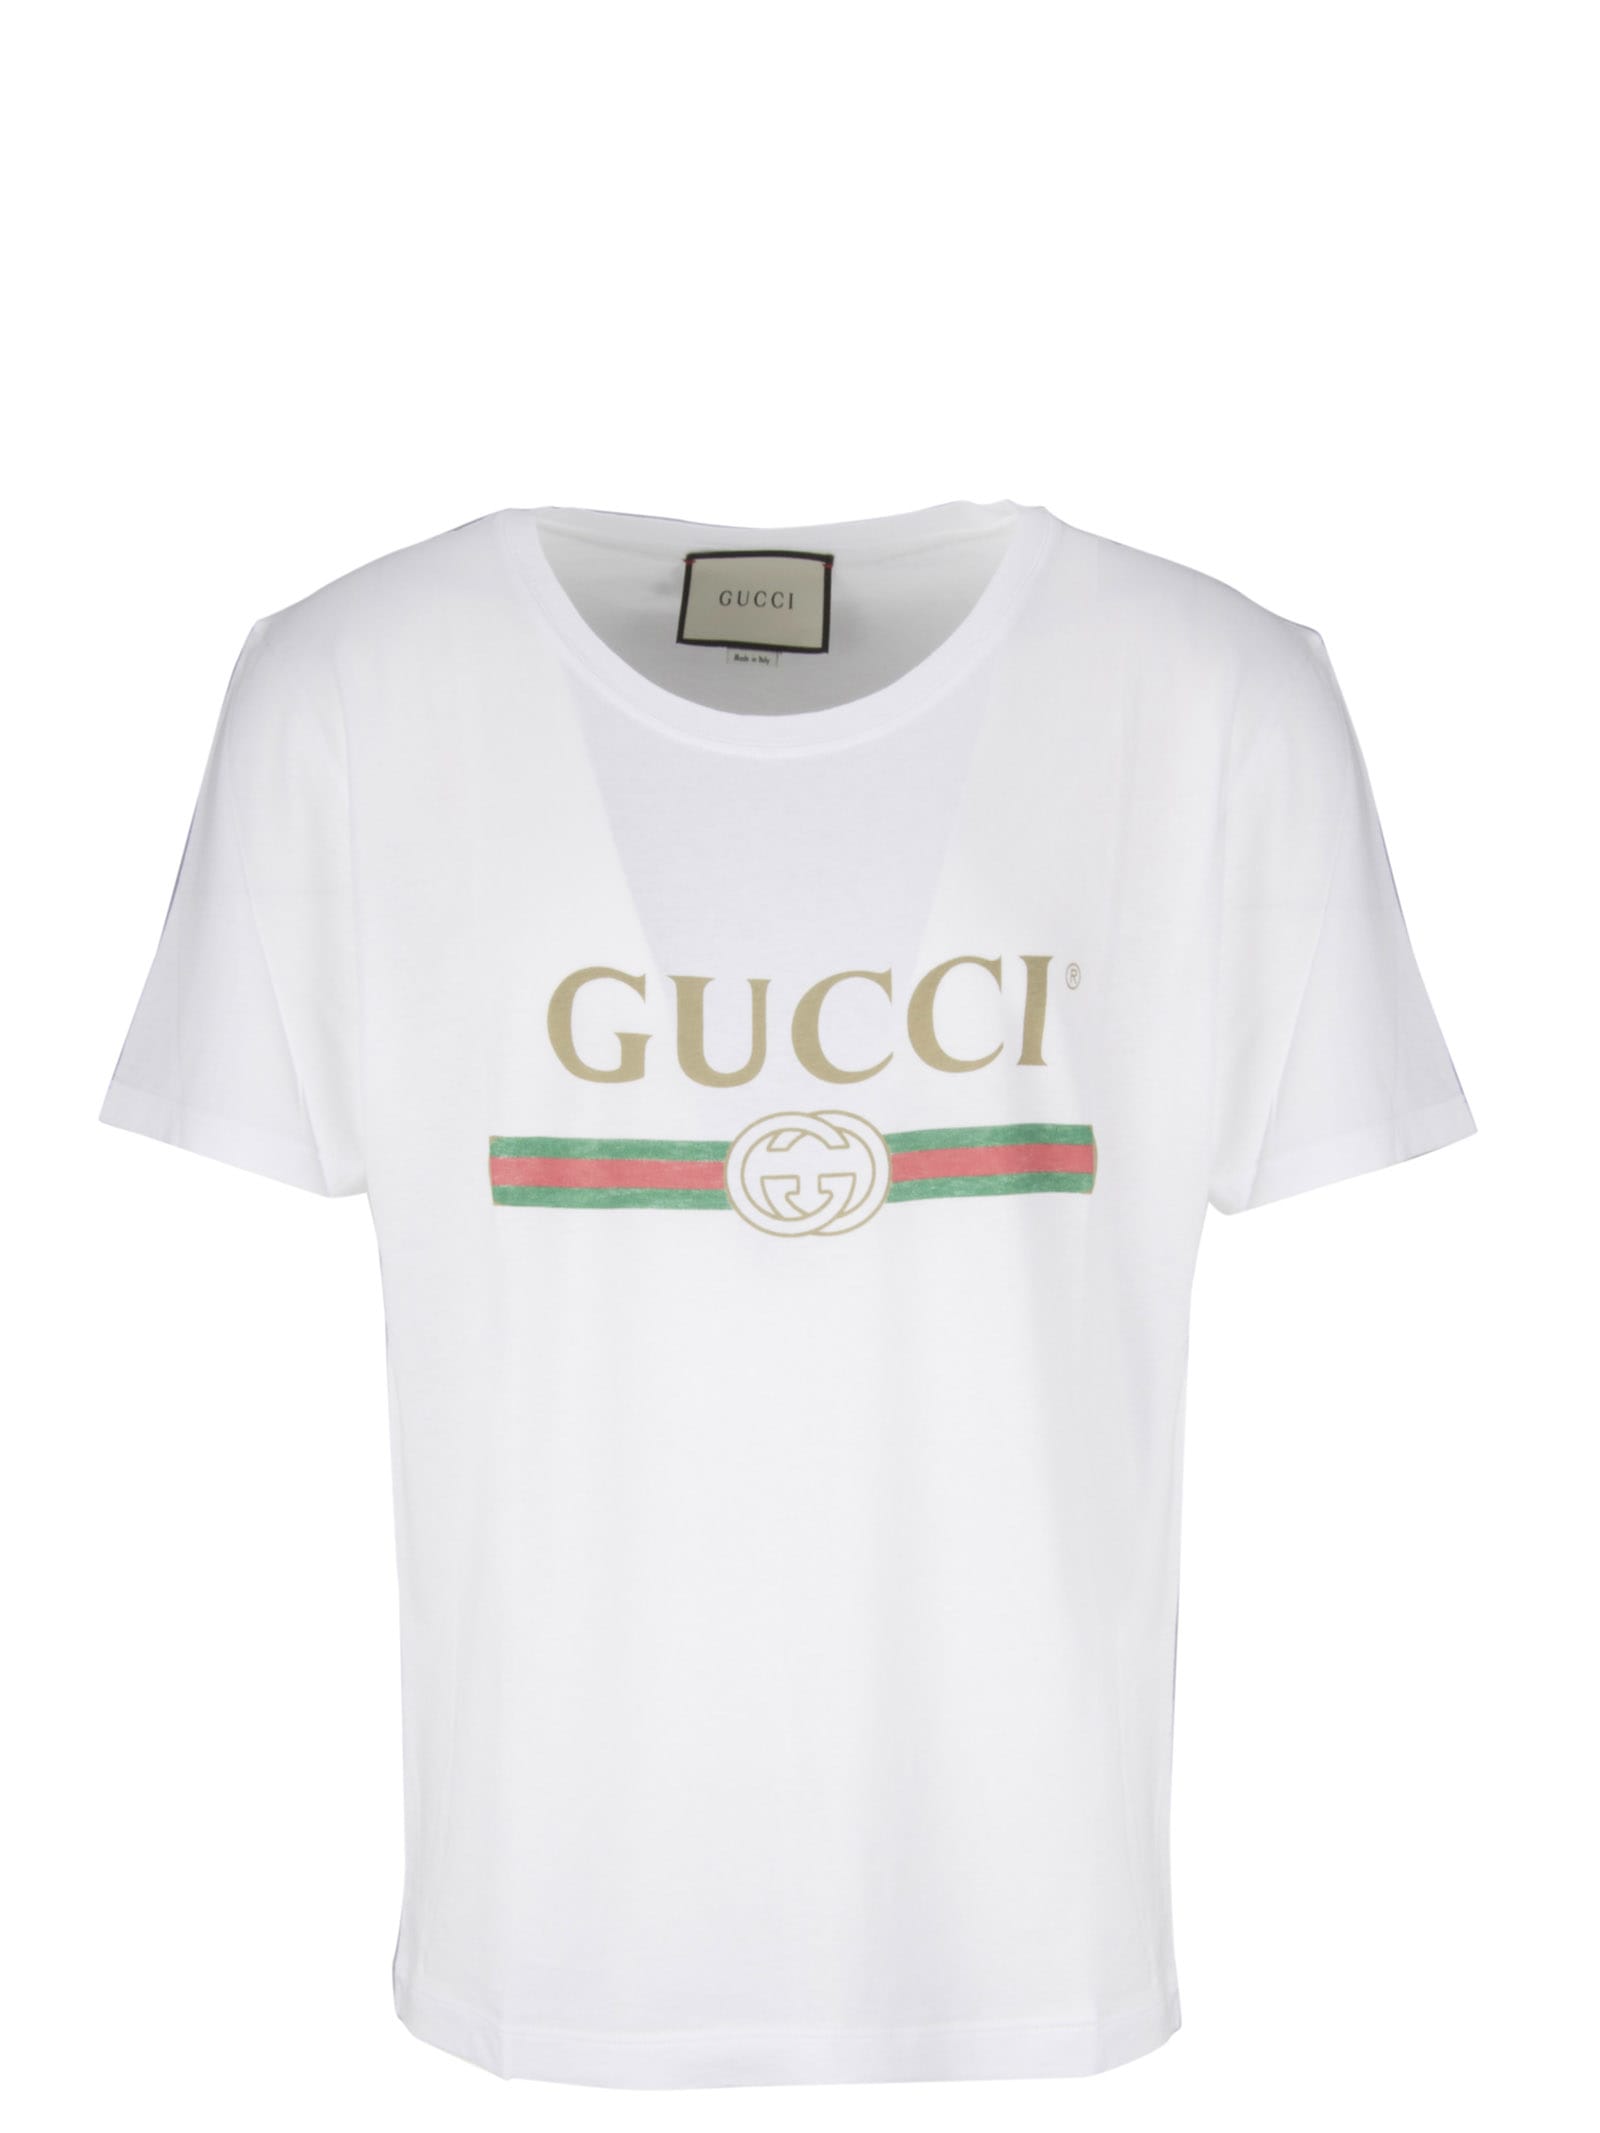 gucci sleeveless t shirt